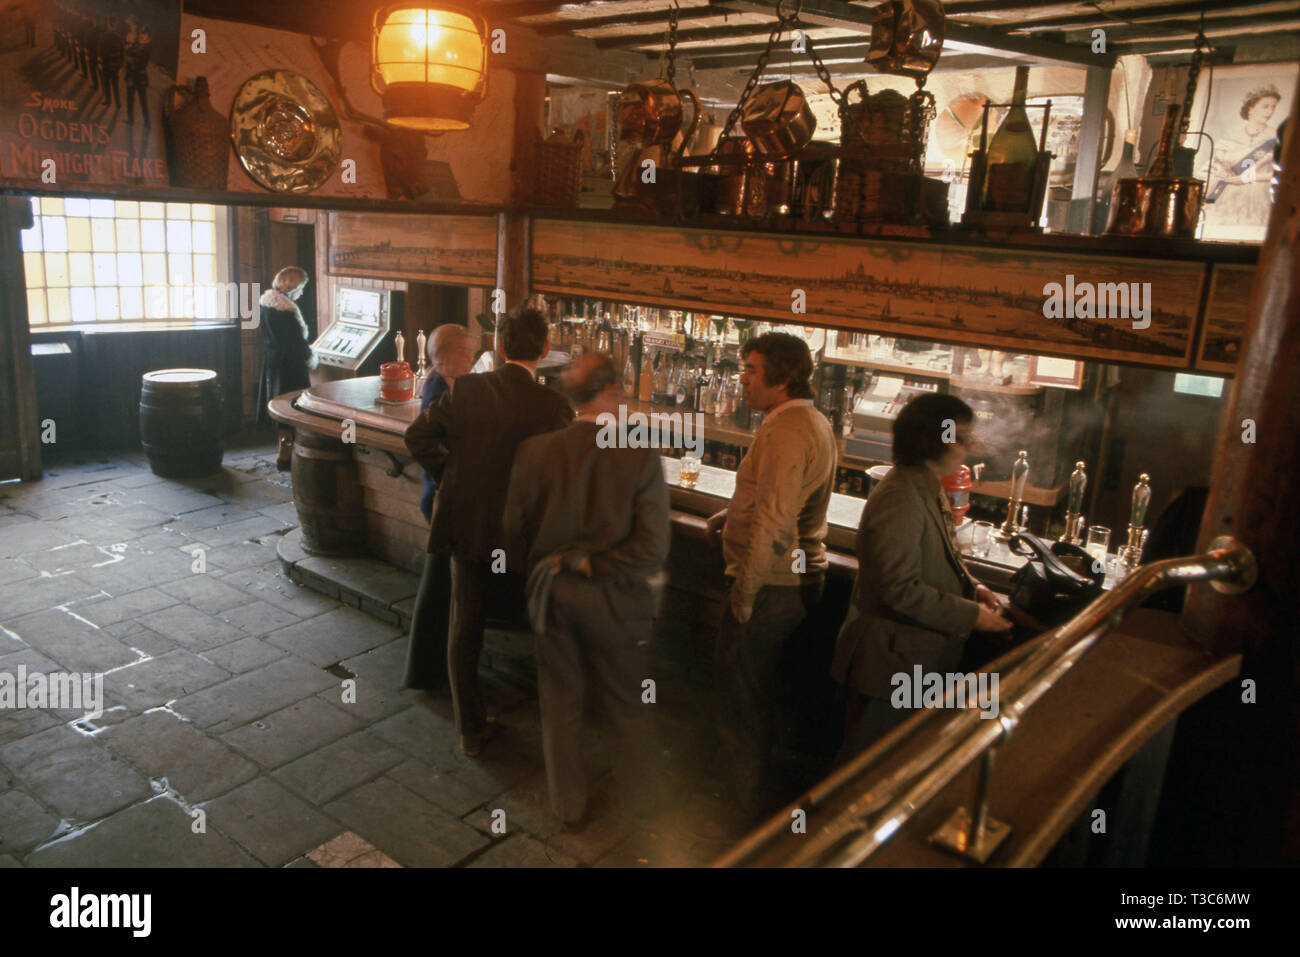 Vieille pub traditionnel avec des hommes de l'intérieur de boire au bar Banque D'Images